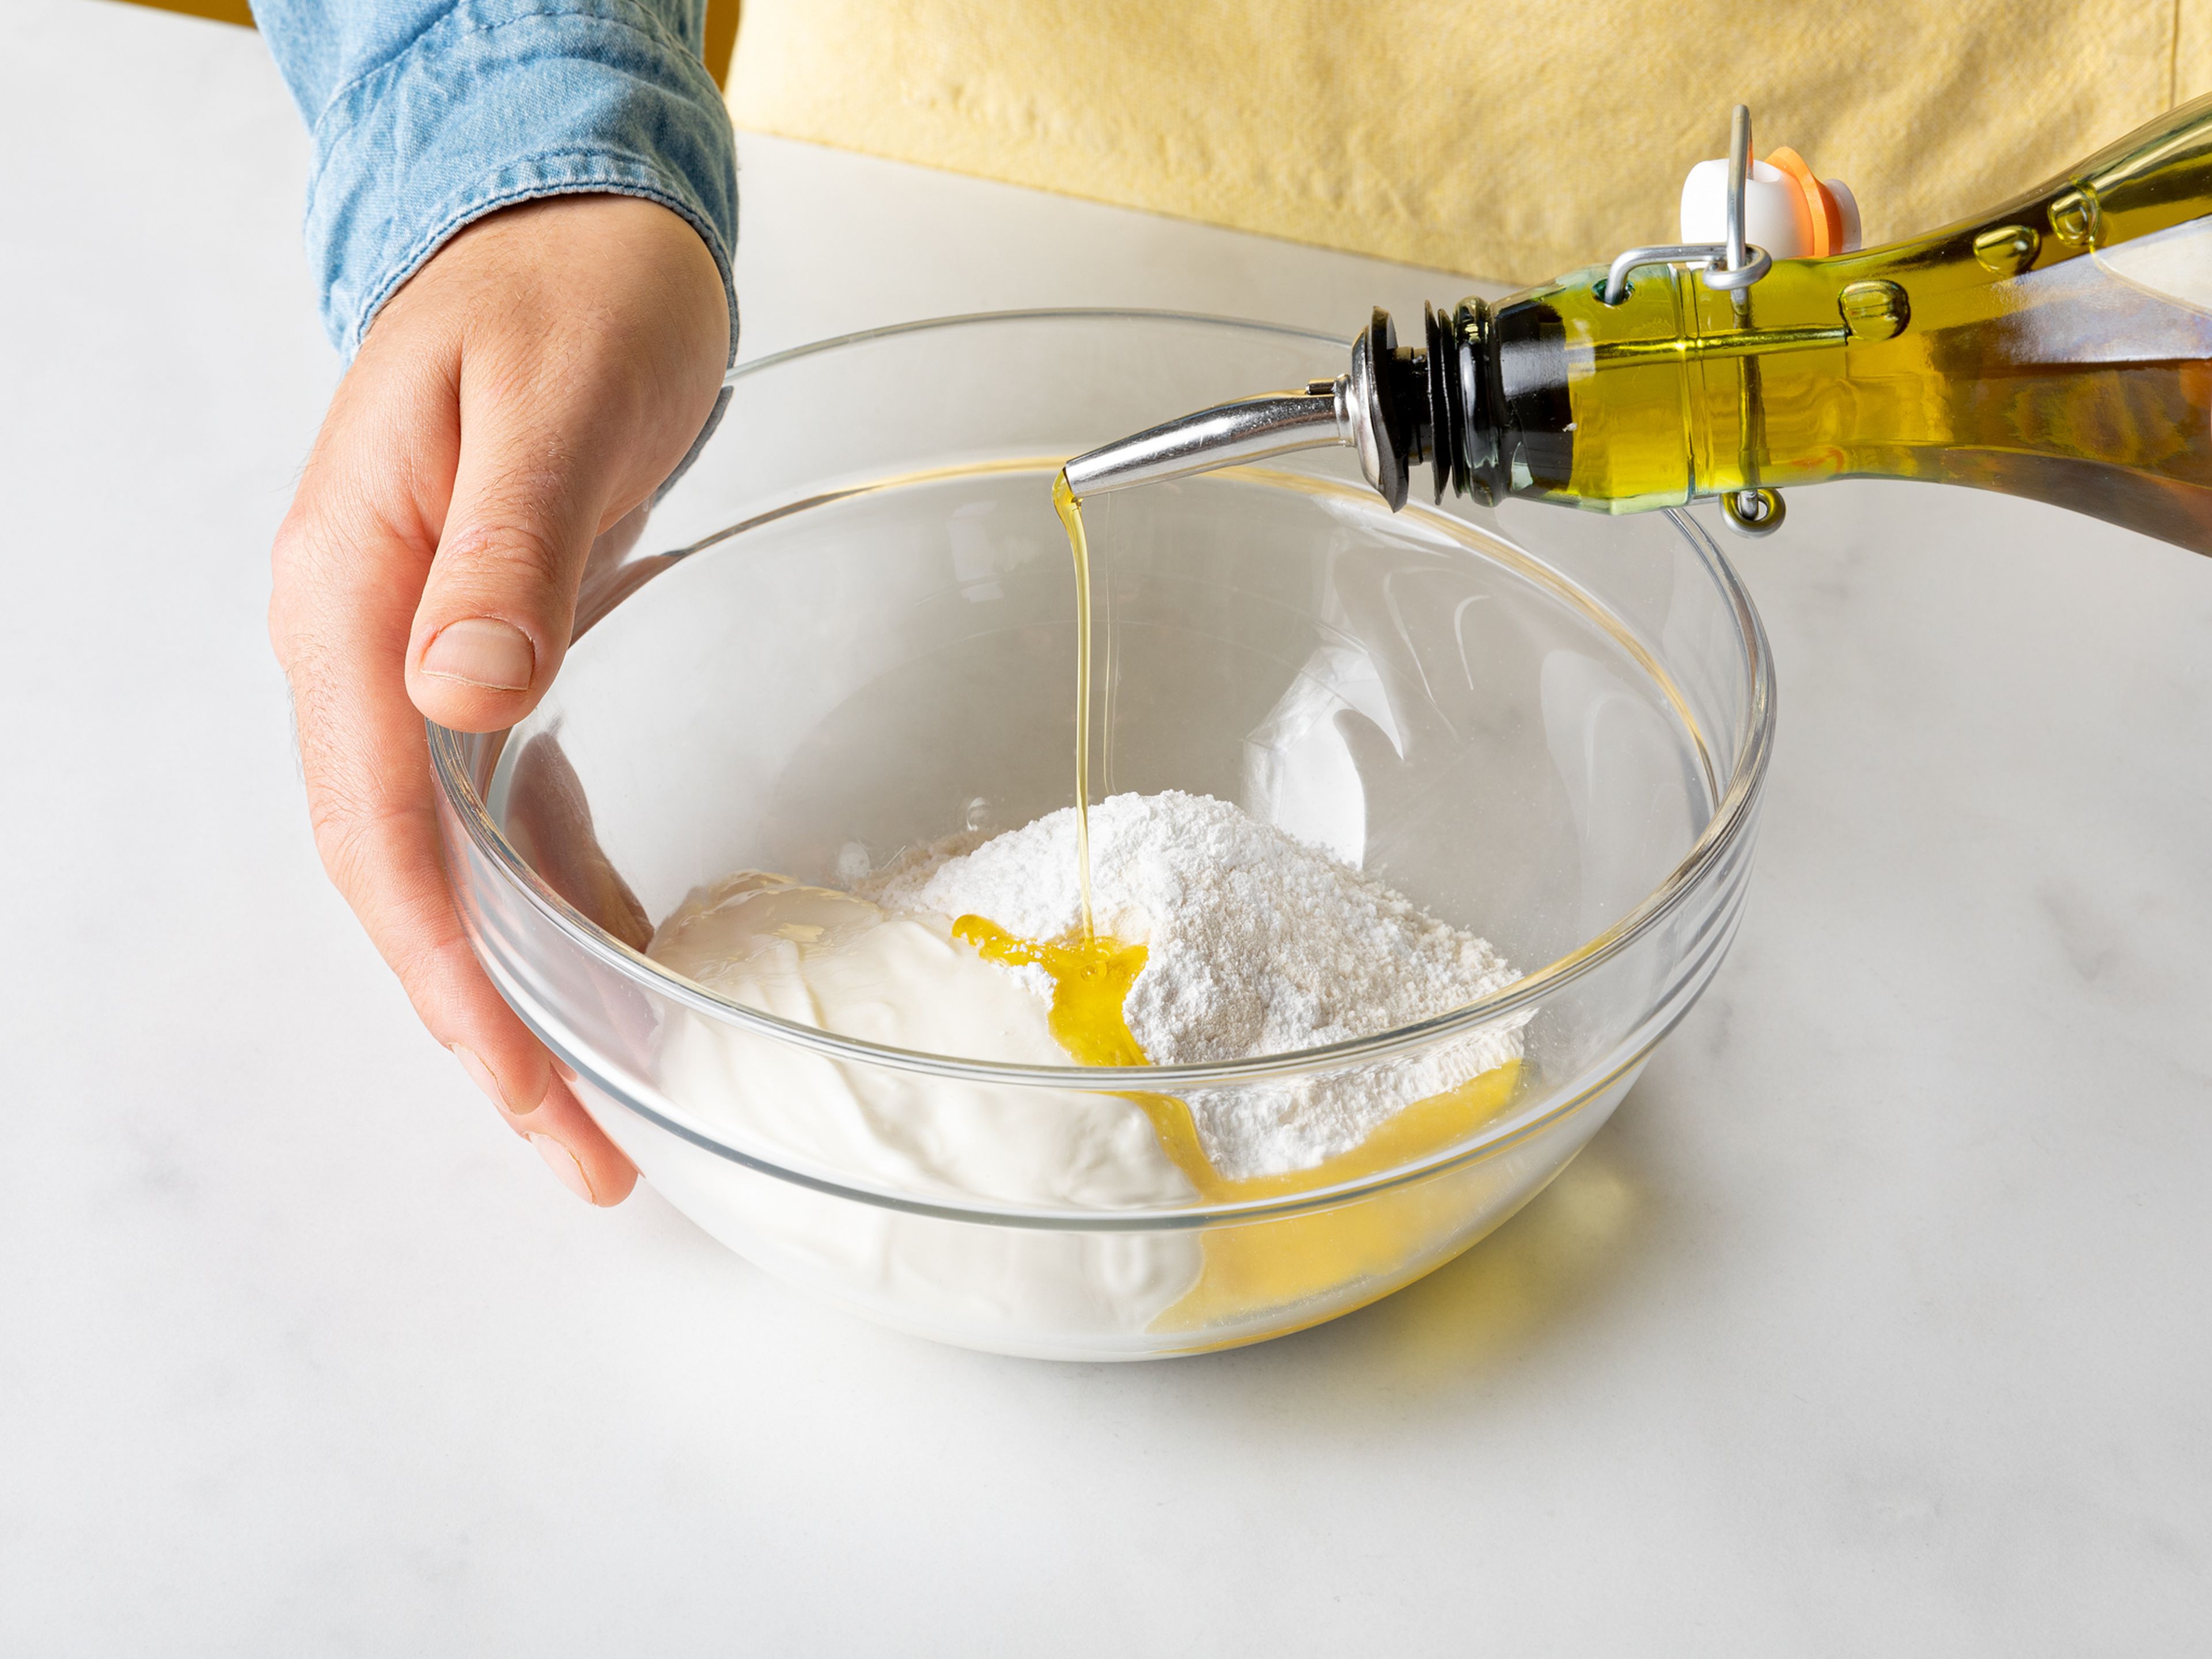 Griechischen Joghurt, Mehl, Backpulver, Olivenöl und Salz in eine große Schüssel geben und zu einem Teig formen. Den Teig anschließend auf einer leicht geölten Oberfläche ausrollen und zu einem Fladenbrot formen.